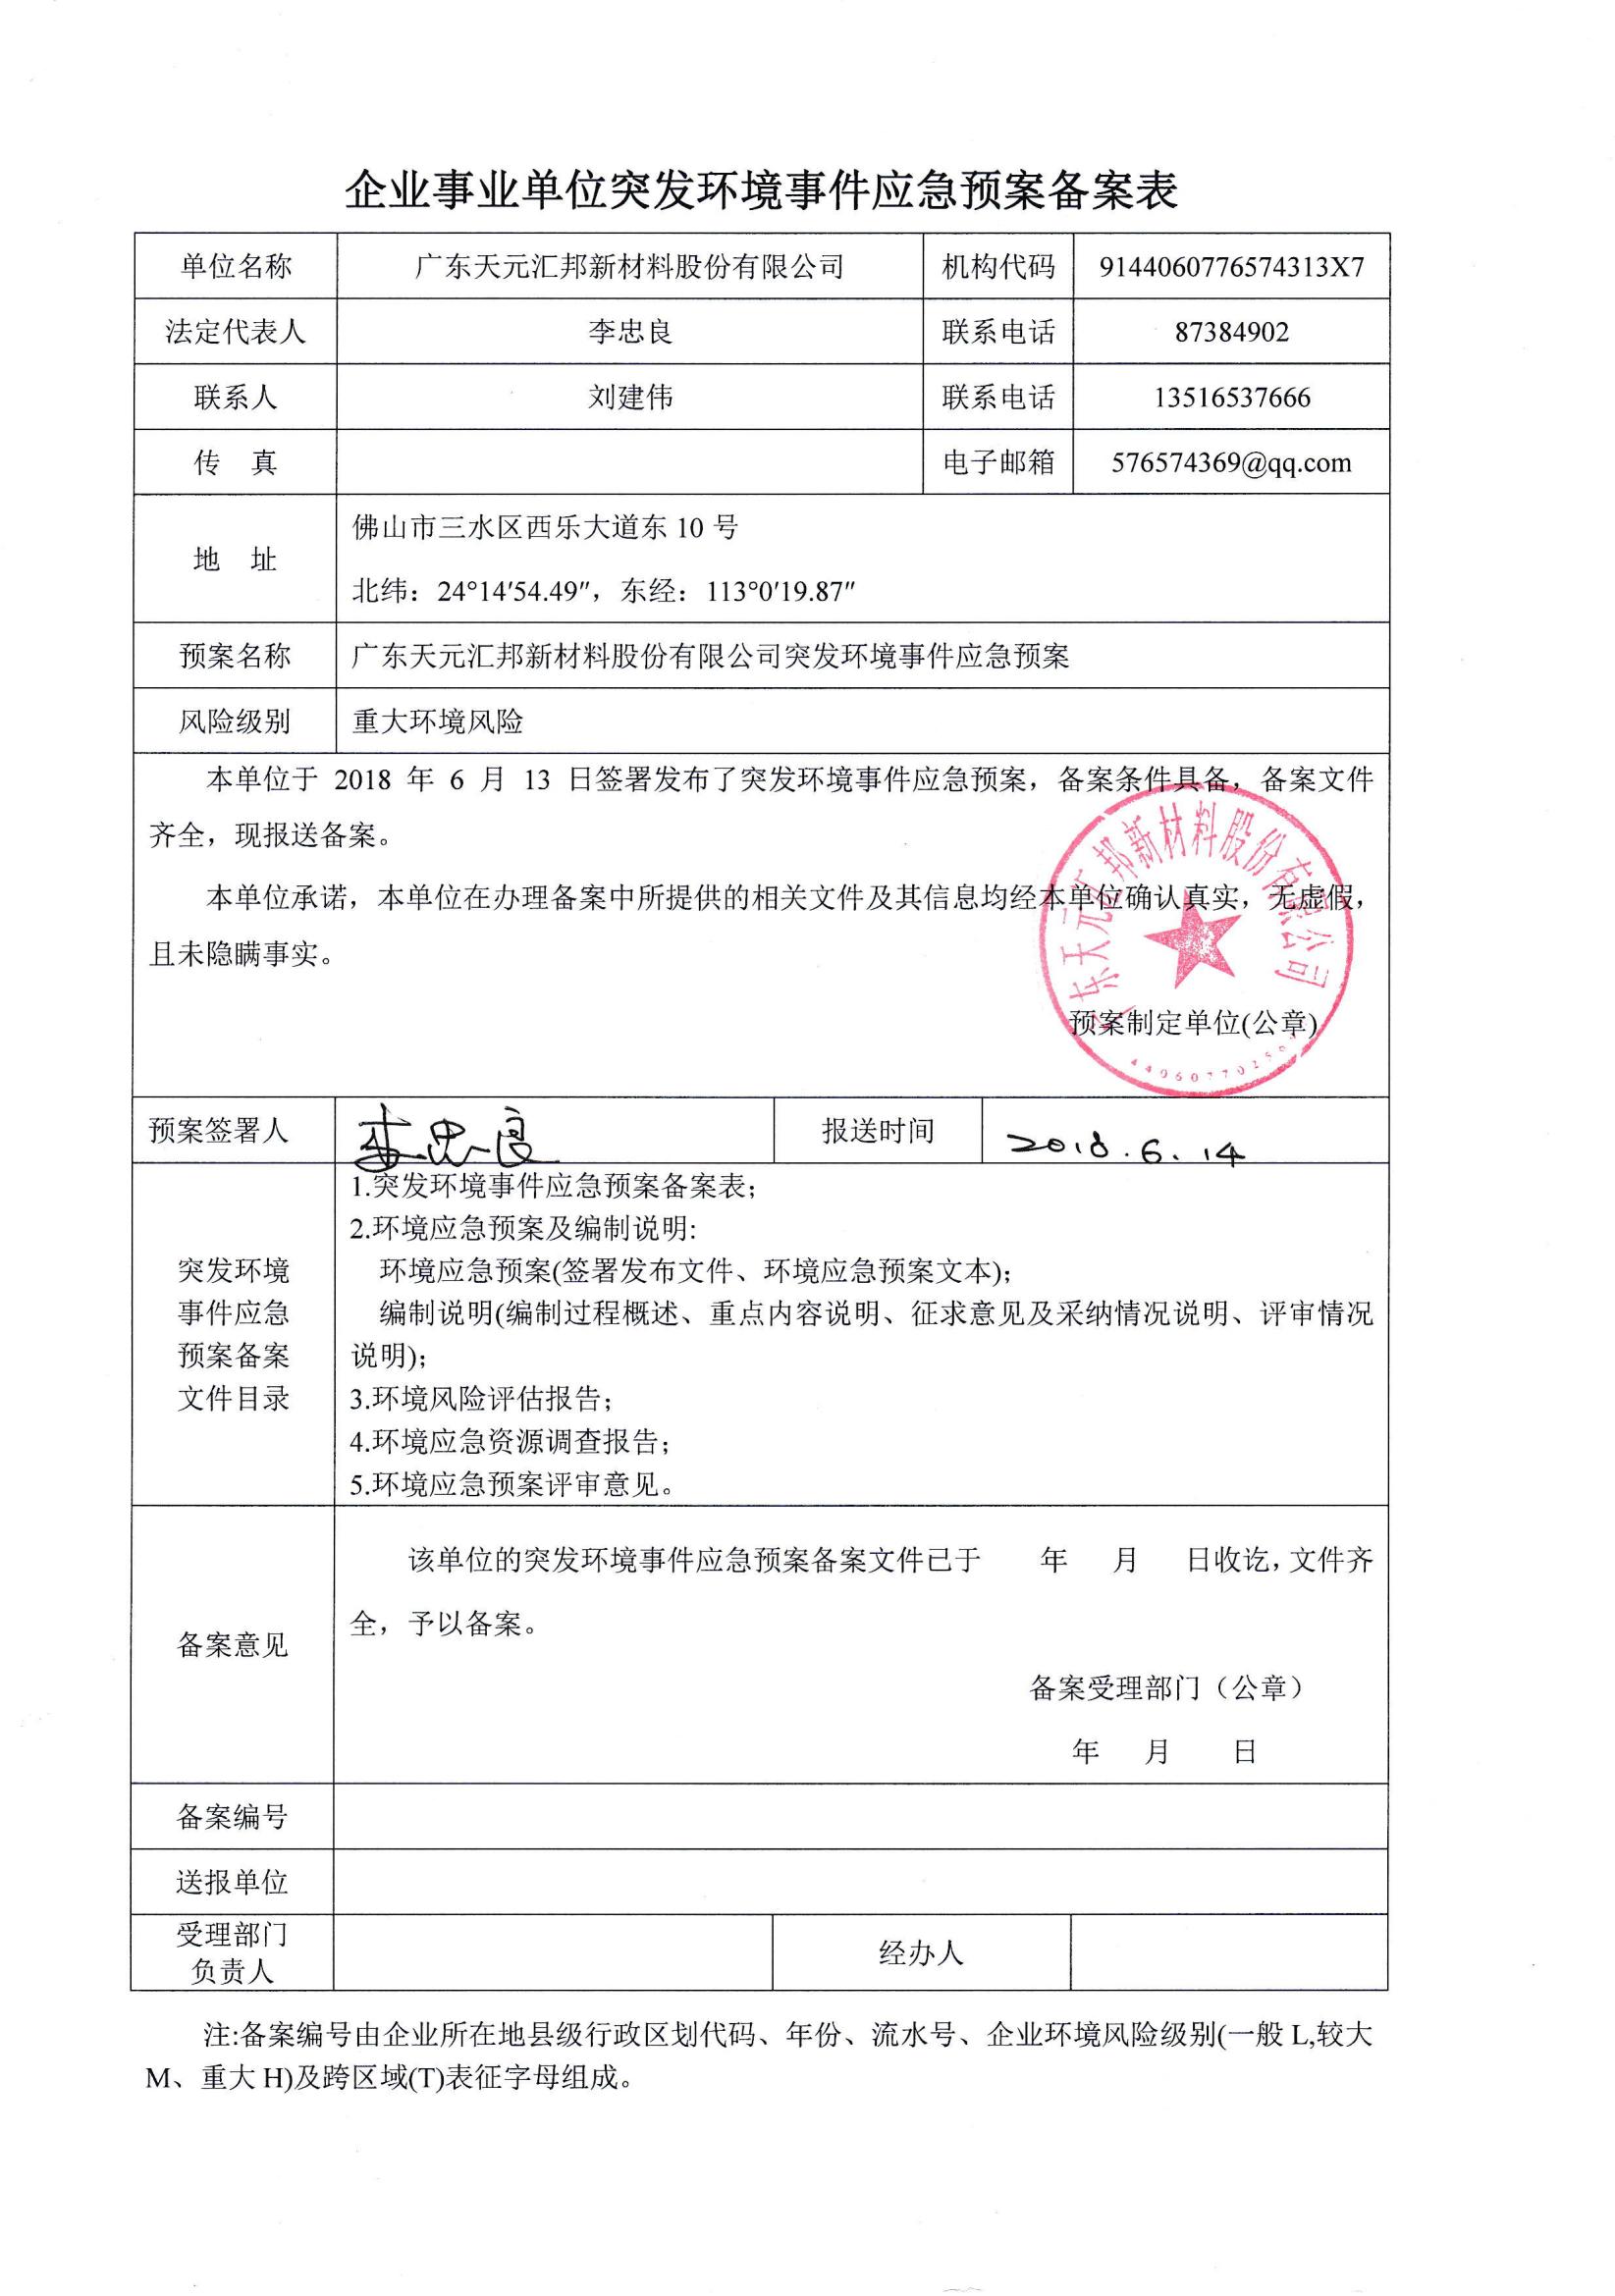 廣東天元匯邦新材料股份有限公司應急預案備案表